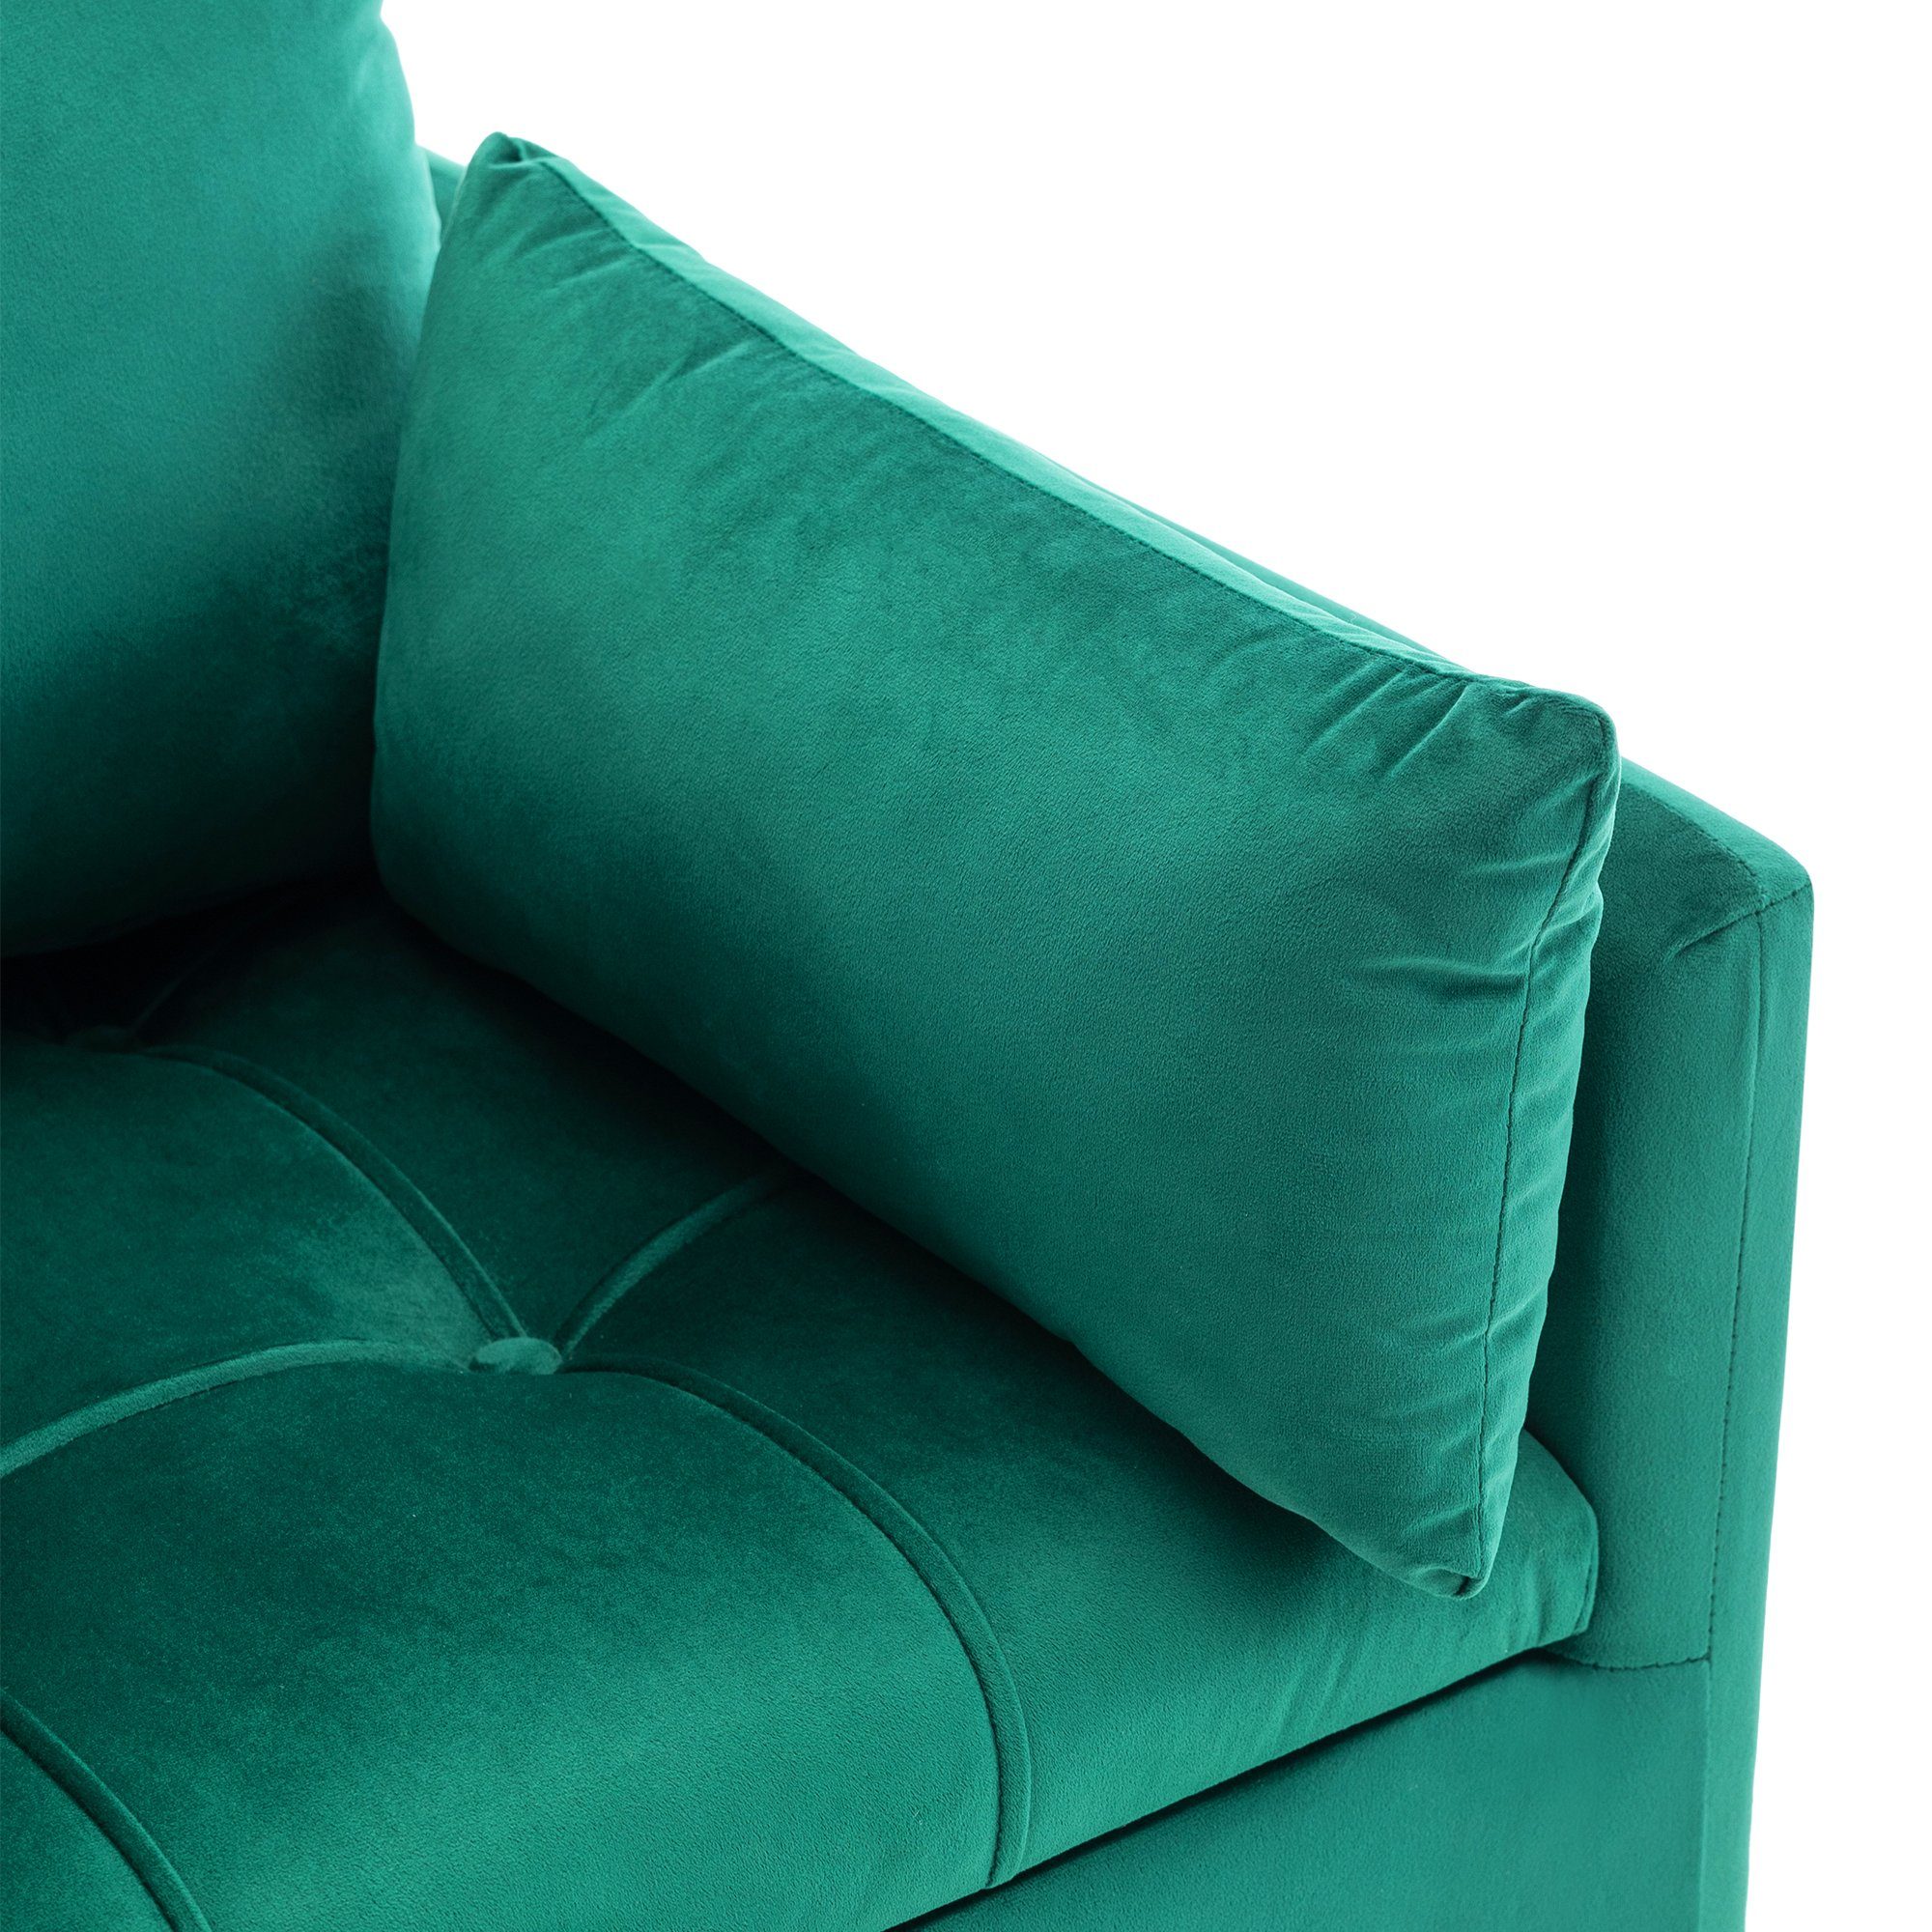 Armlehnensessel, mit mit Stauraum Merax Akzentstul goldenen Einzelsessel Grün Samtbezug, Metallbeine, Polstersessel, und Sessel